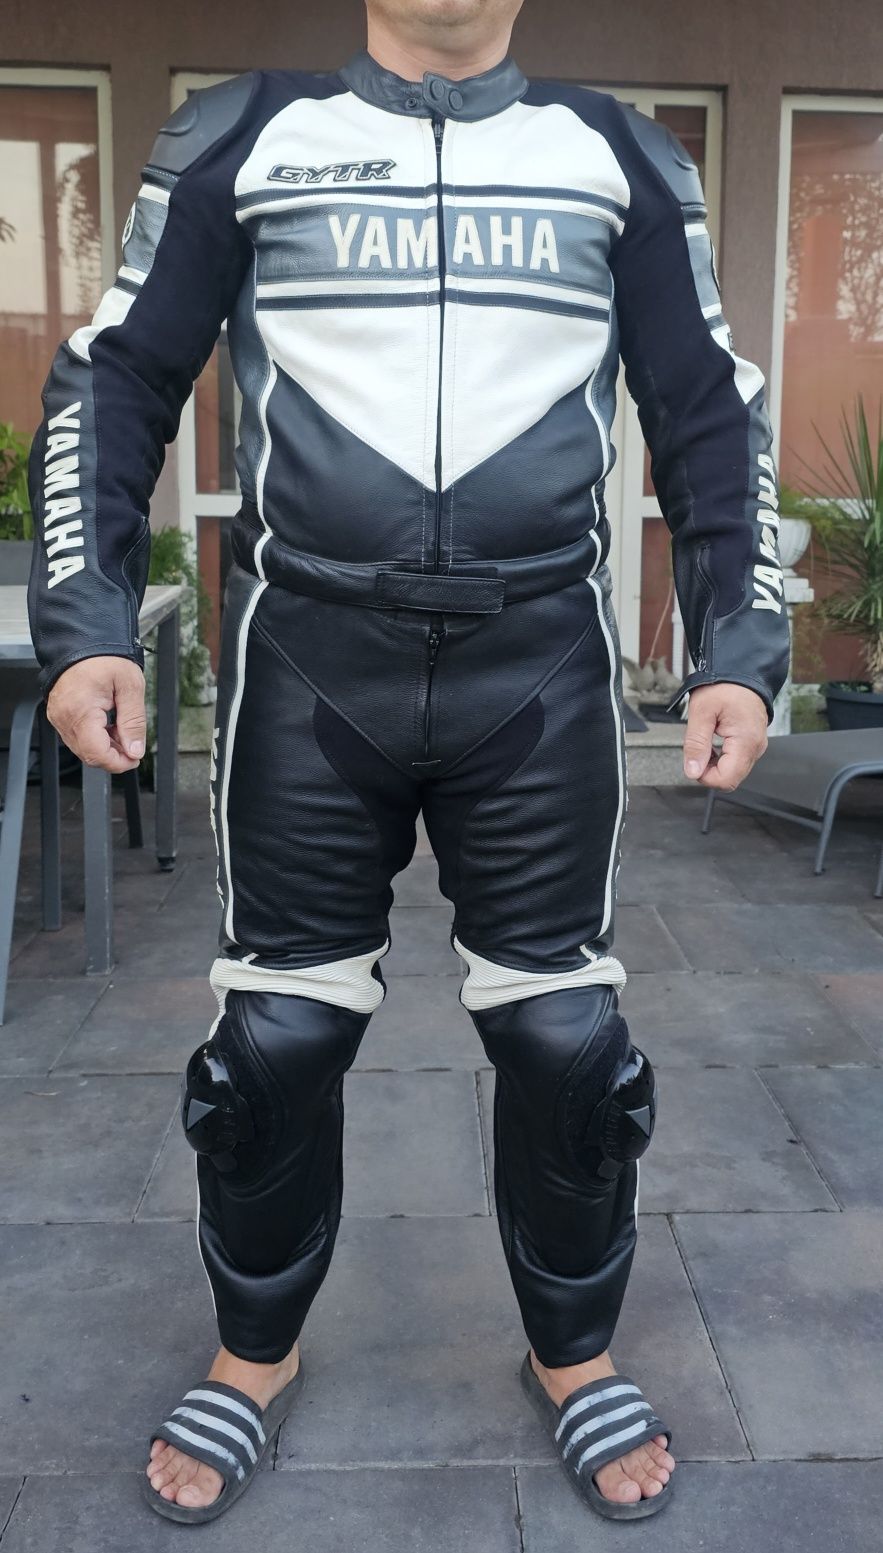 Costum moto Dainese Yamaha manusi moto